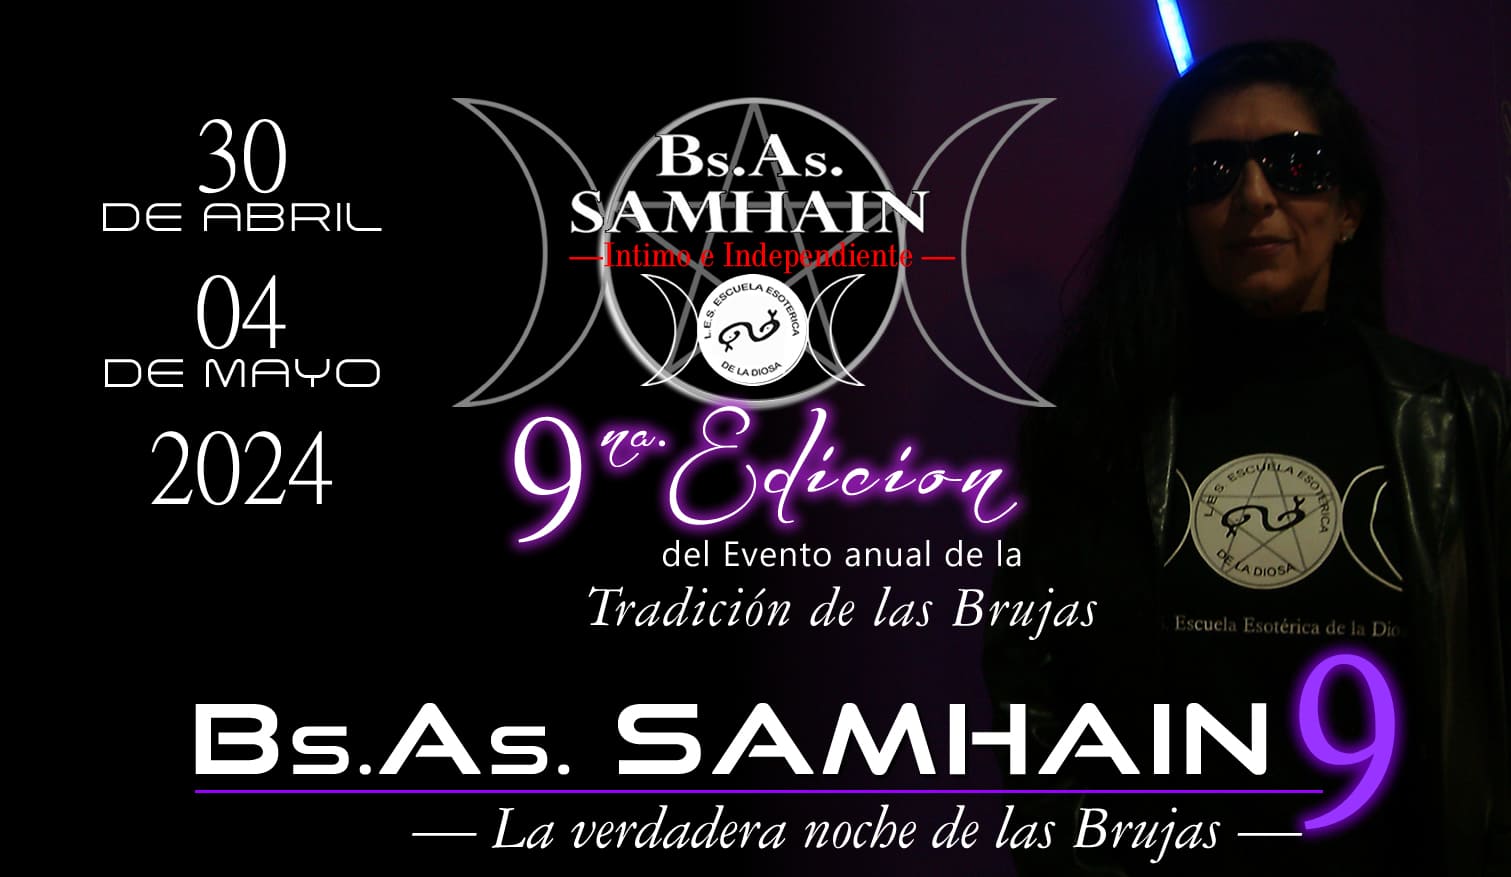 Invitación al evento BsAs Samhain 2024 La Tradición de las Brujas